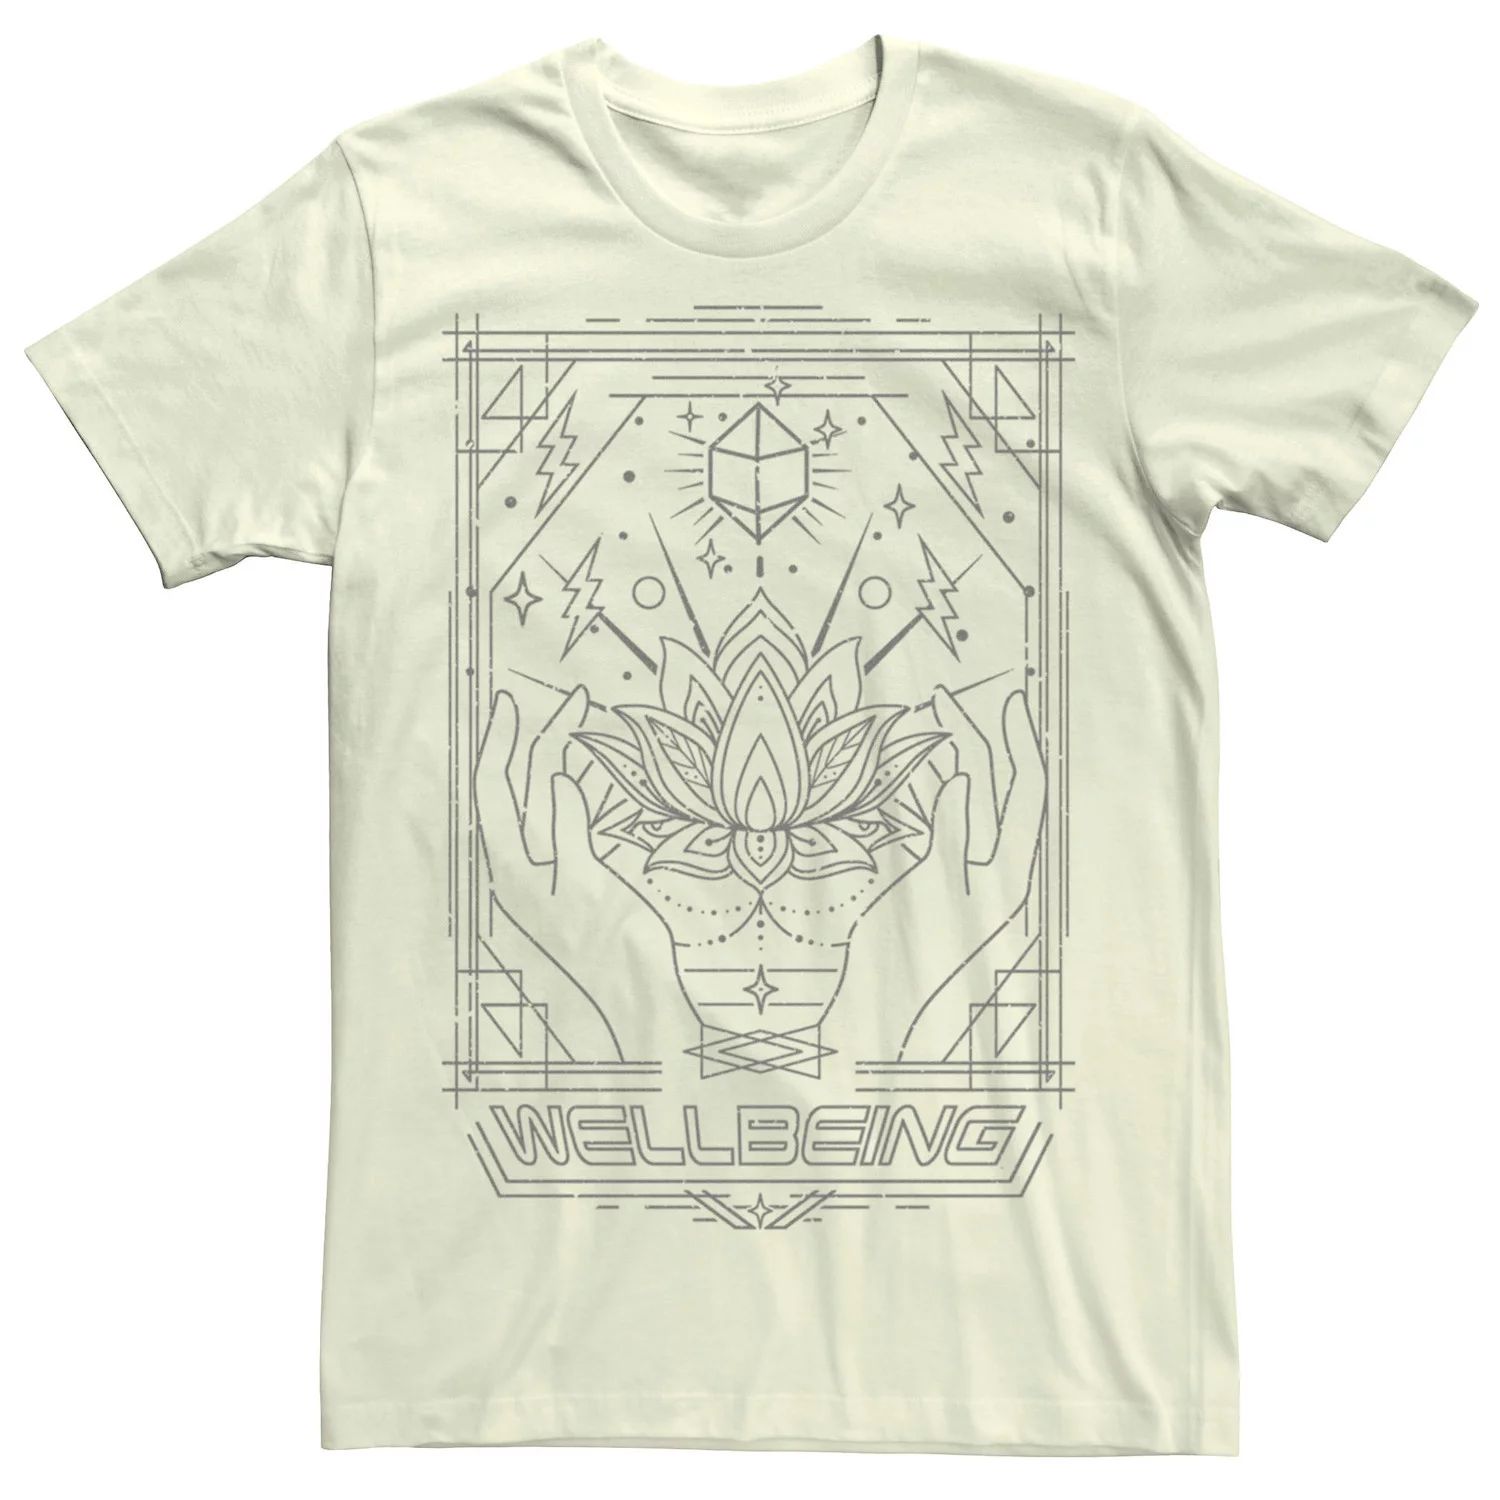 Мужская футболка Wellbeing с геометрическими линиями Licensed Character